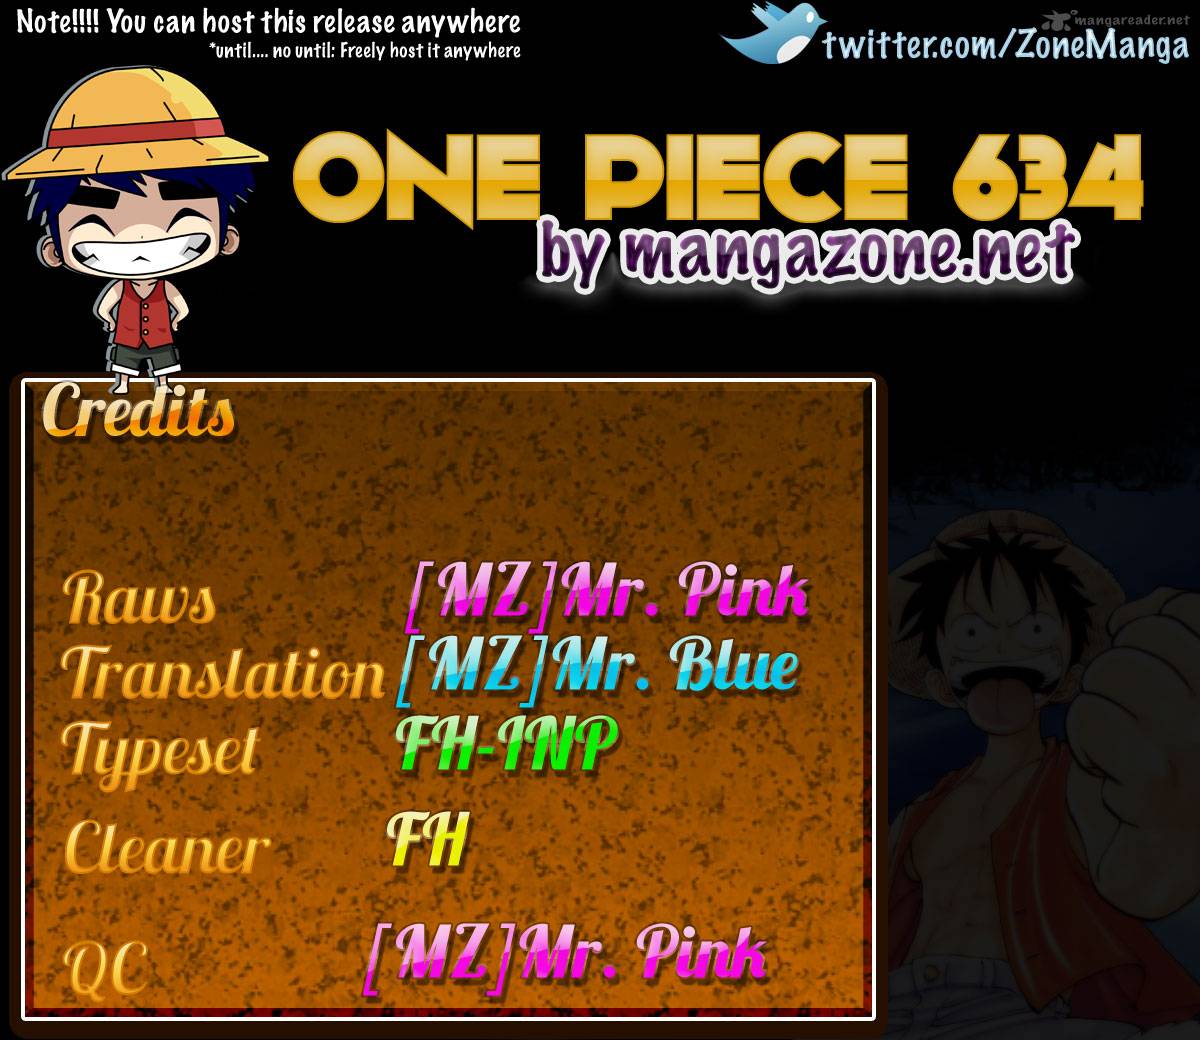 One Piece 634 16